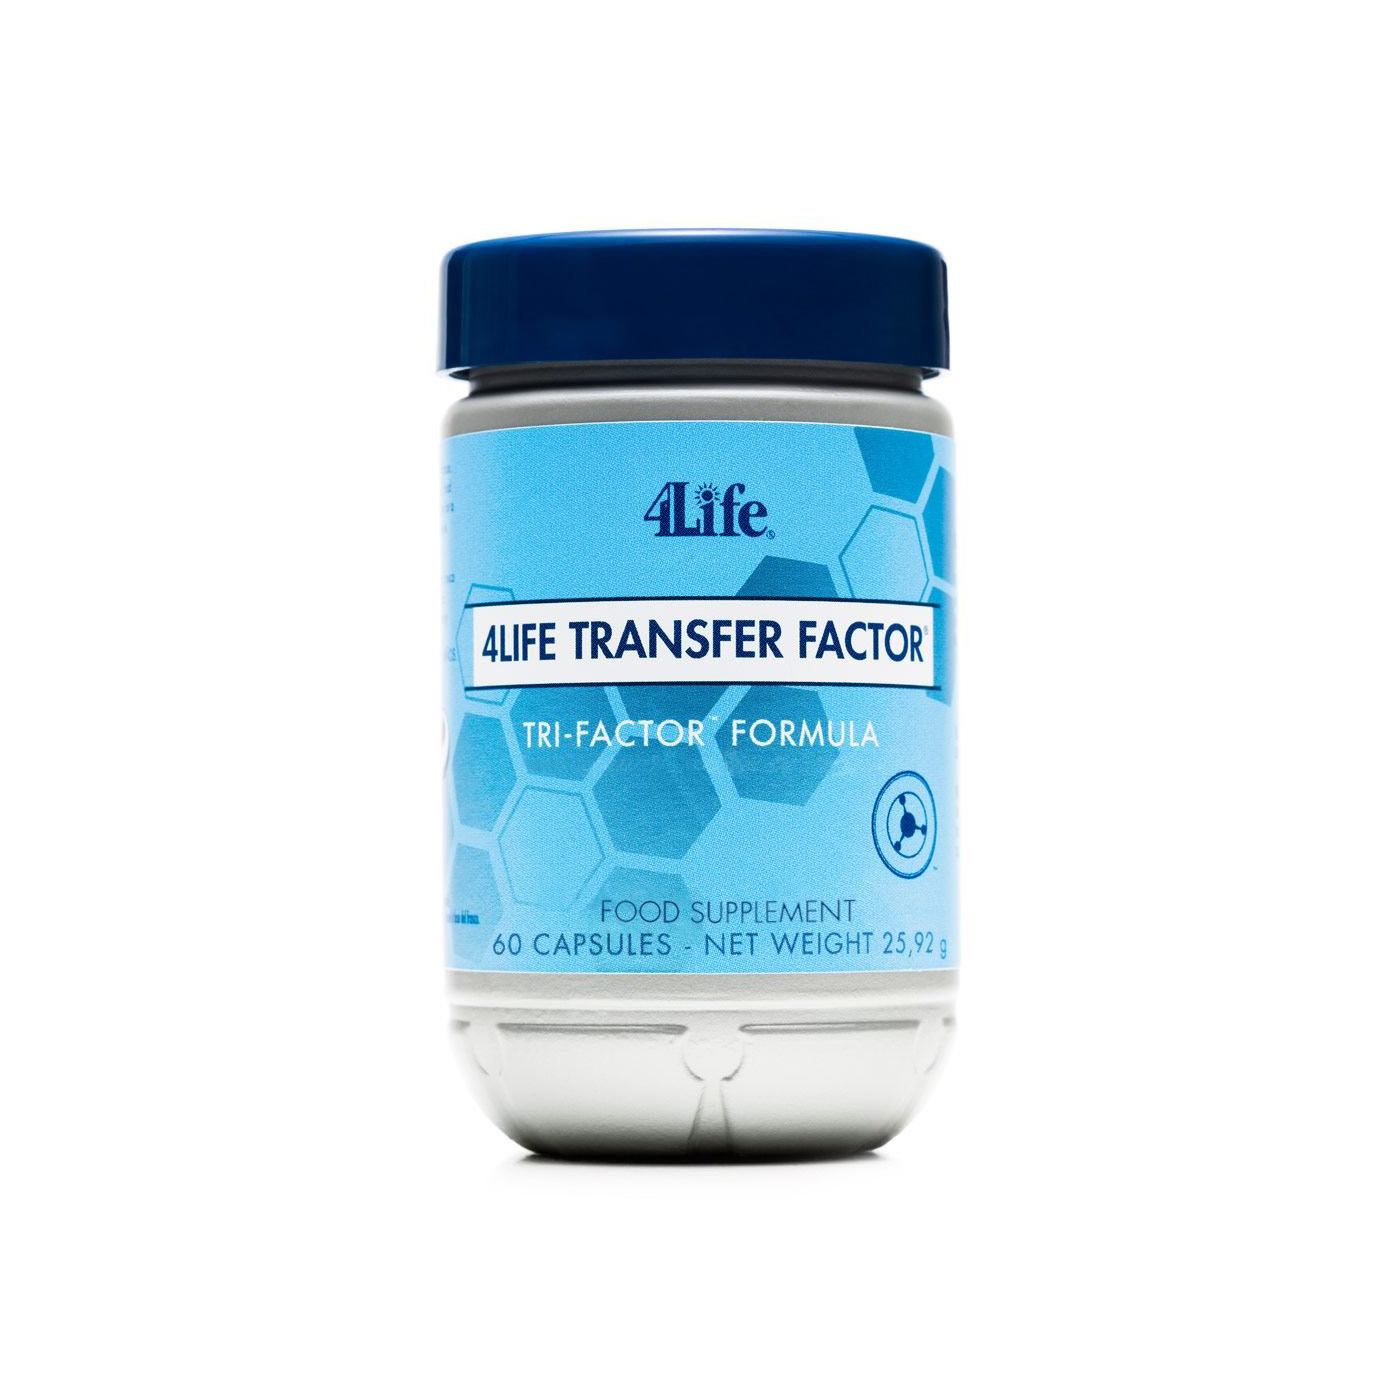 Трансфер фактор трай. Витамины 4life transfer Factor. 4life трансфер. Трансфер фактор Классик. 4life трансфер фактор Трай-фактор формула.